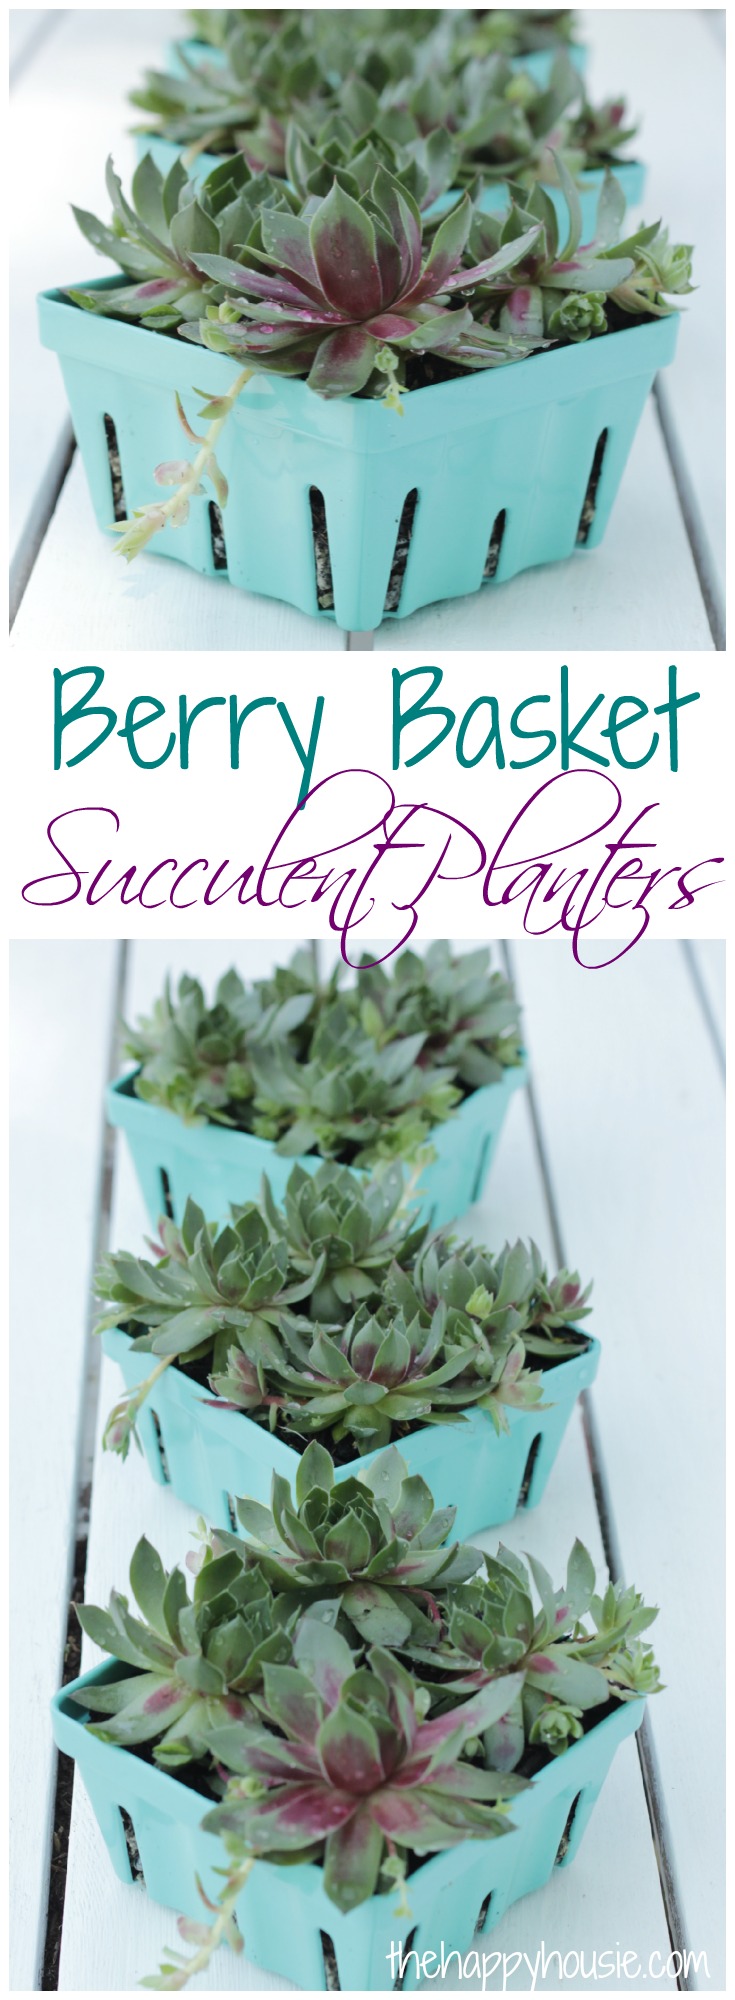 Berry Basket Succulent Planters graphic.